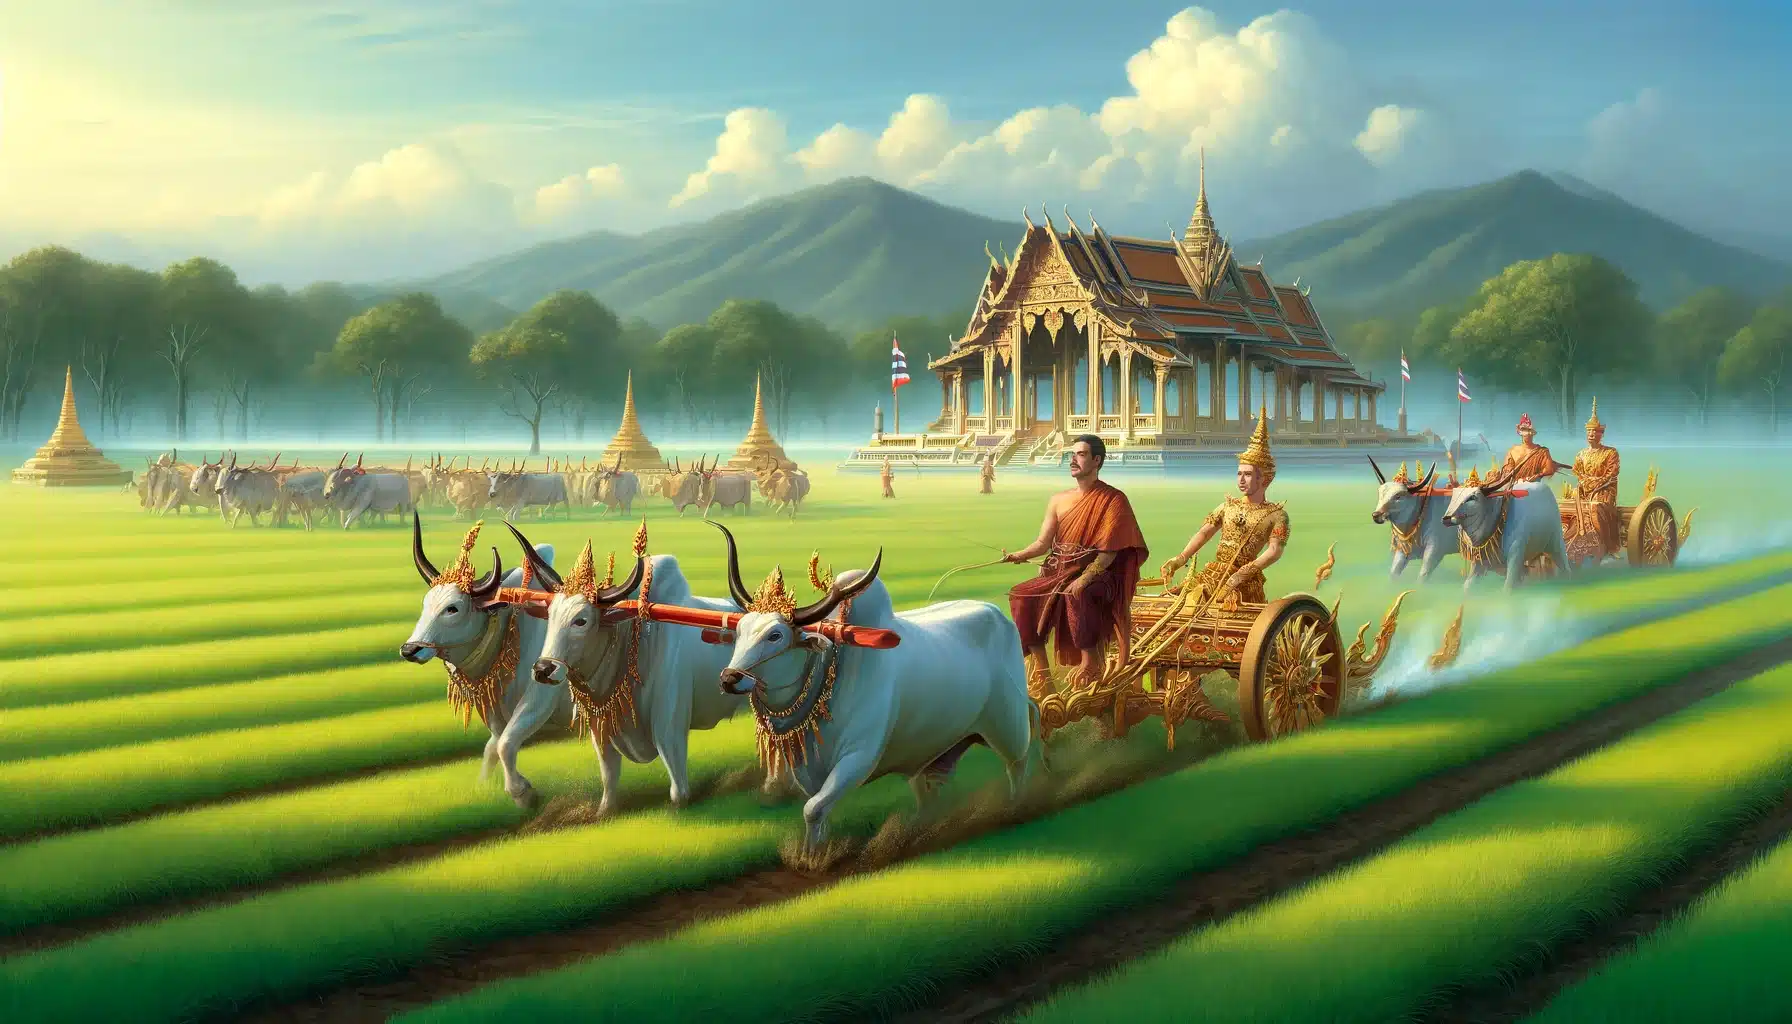 พระราชพิธีจรดพระนังคัลแรกนาขวัญในประเทศไทย เกษตรกรไทยสวมชุดไทยโบราณ โคตกแต่งด้วยผ้าและเครื่องประดับสวยงาม และพระมหากษัตริย์ทรงประกอบพิธีไถนา พื้นหลังเป็นทุ่งนาเขียวขจีใต้ท้องฟ้าสีครามสดใส มีศาลาราชวังอยู่ไกลๆ บรรยากาศแสดงถึงความมั่งคั่งทางวัฒนธรรมและความสำคัญของพิธีนี้ที่มีต่อเกษตรกรไทย
